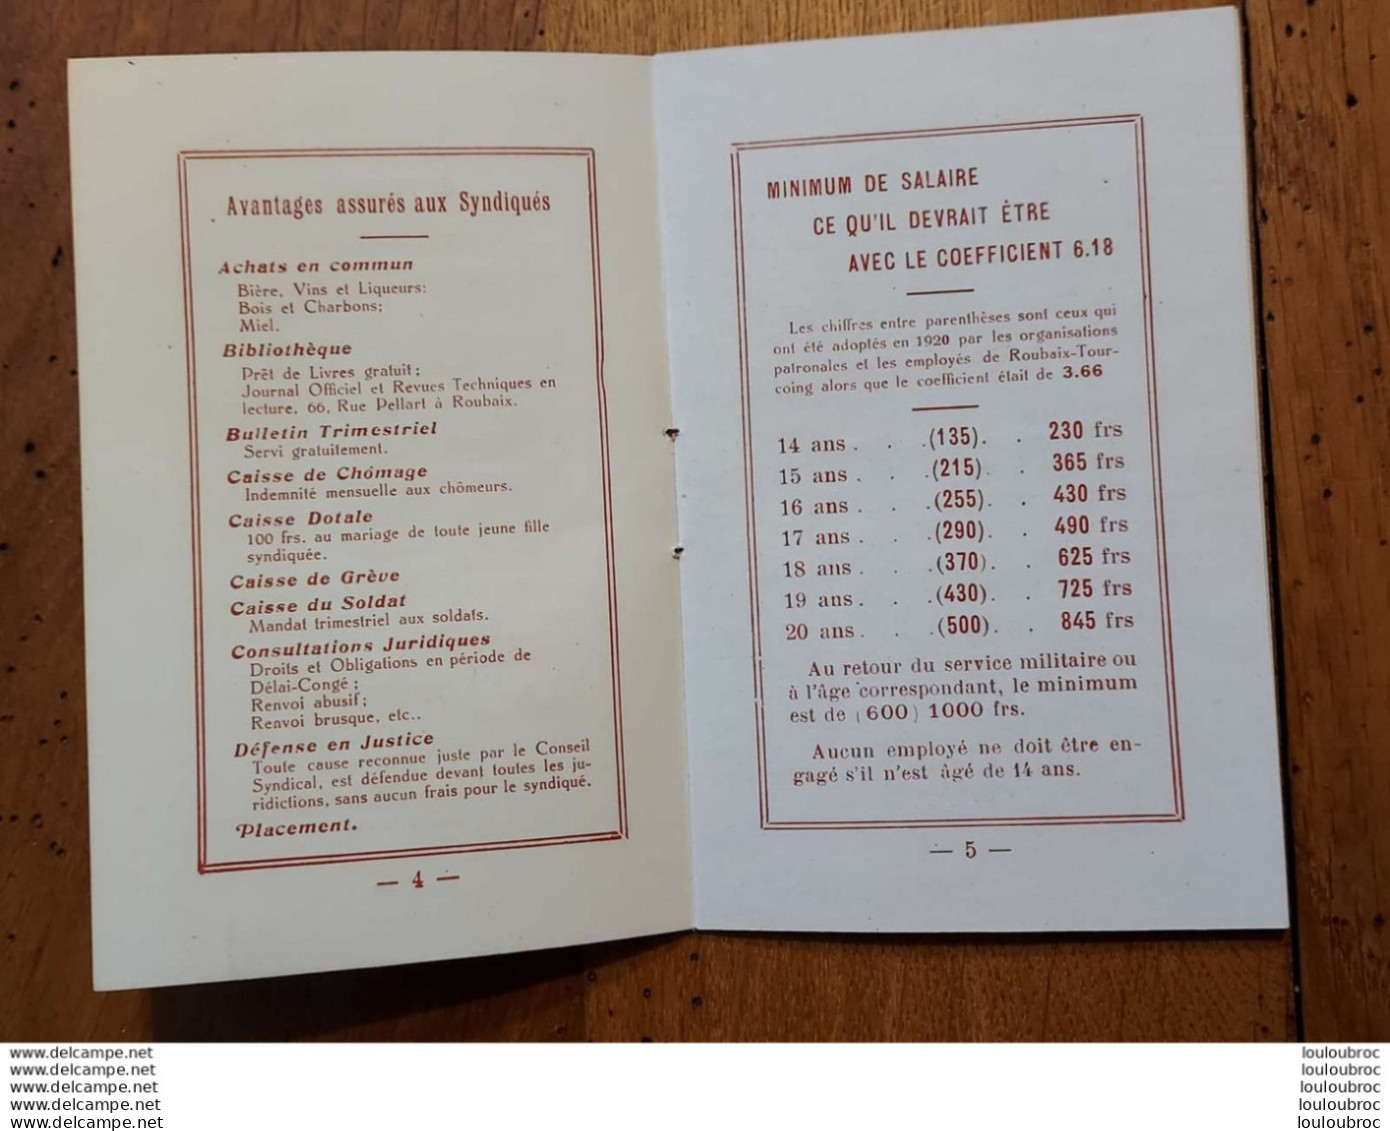 SYNDICAT DES EMPLOYES DE LILLE ROUBAIX TOURCOING ANNEE 1930 AVEC CALENDRIER LIVRET DE 20 PAGES PARFAIT ETAT - Unclassified